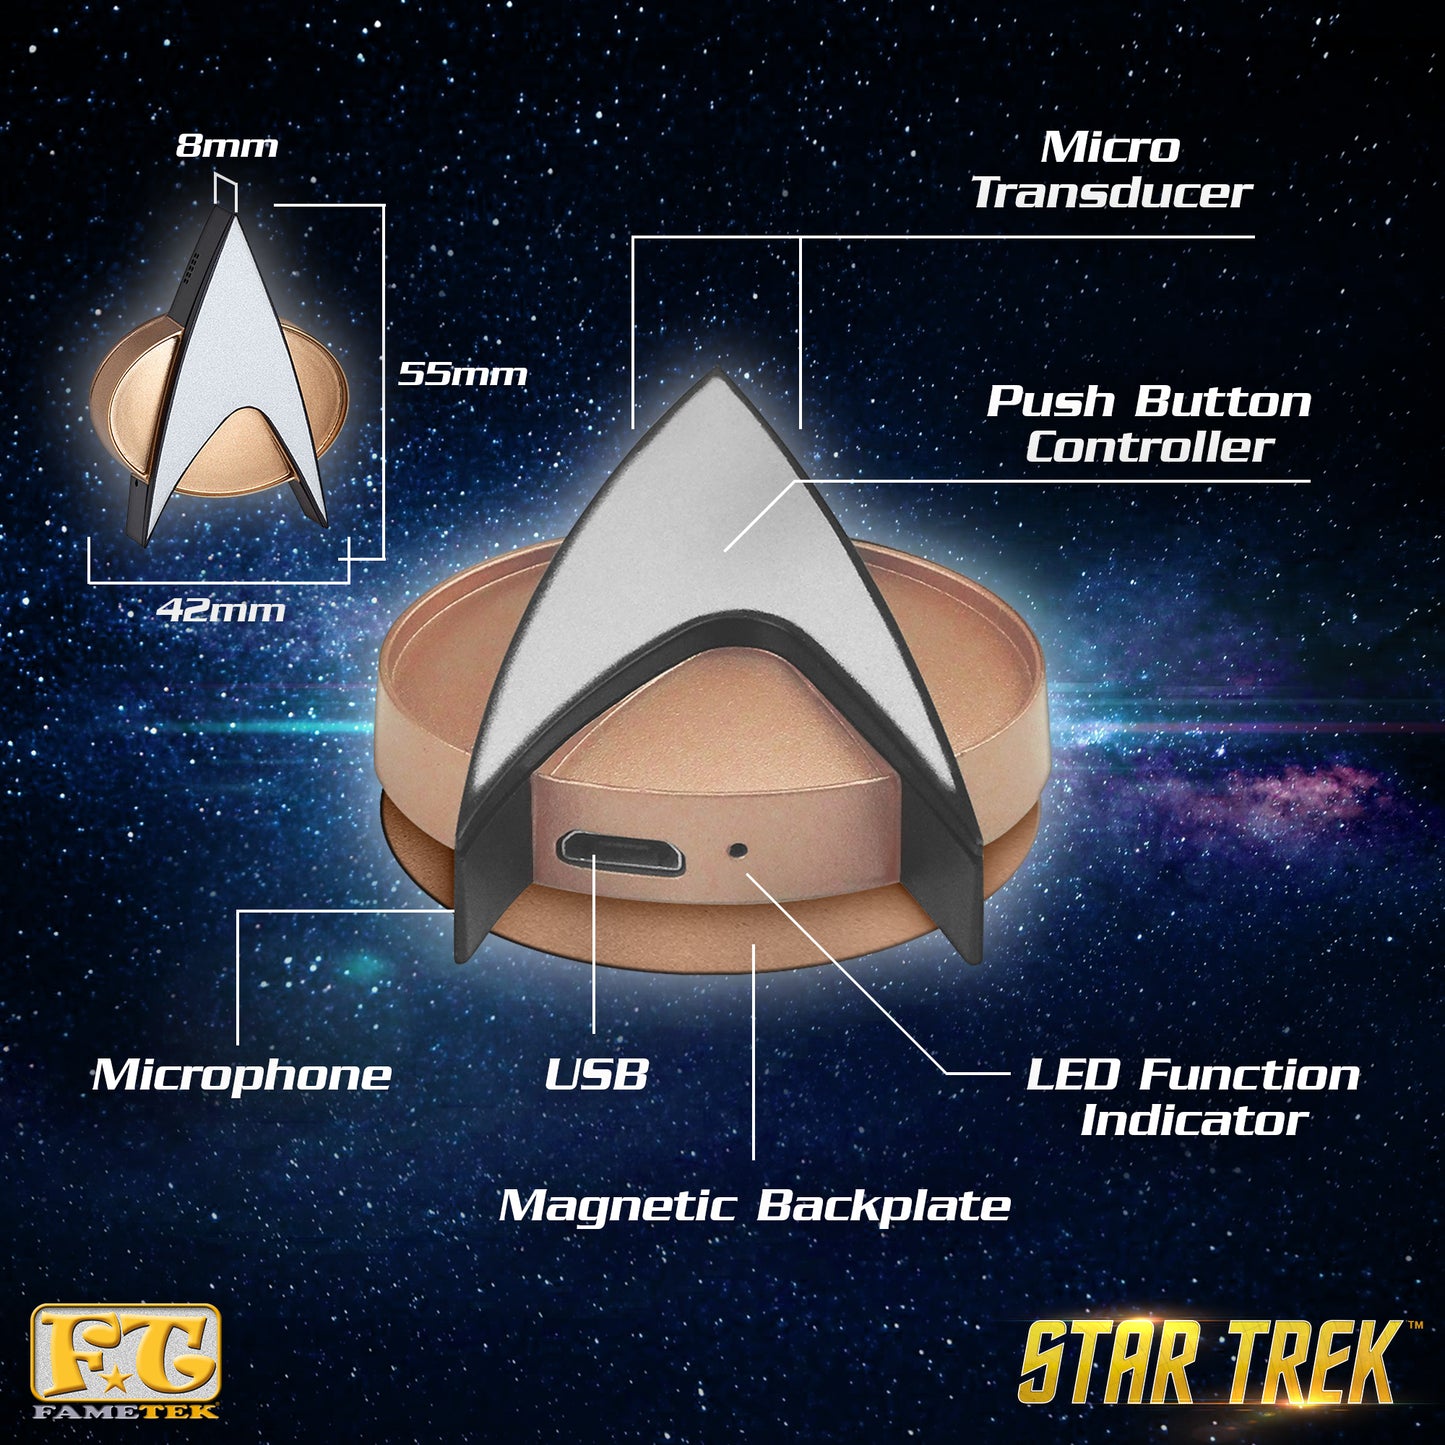 Star Trek: Le badge de communicateur Bluetooth de prochaine génération